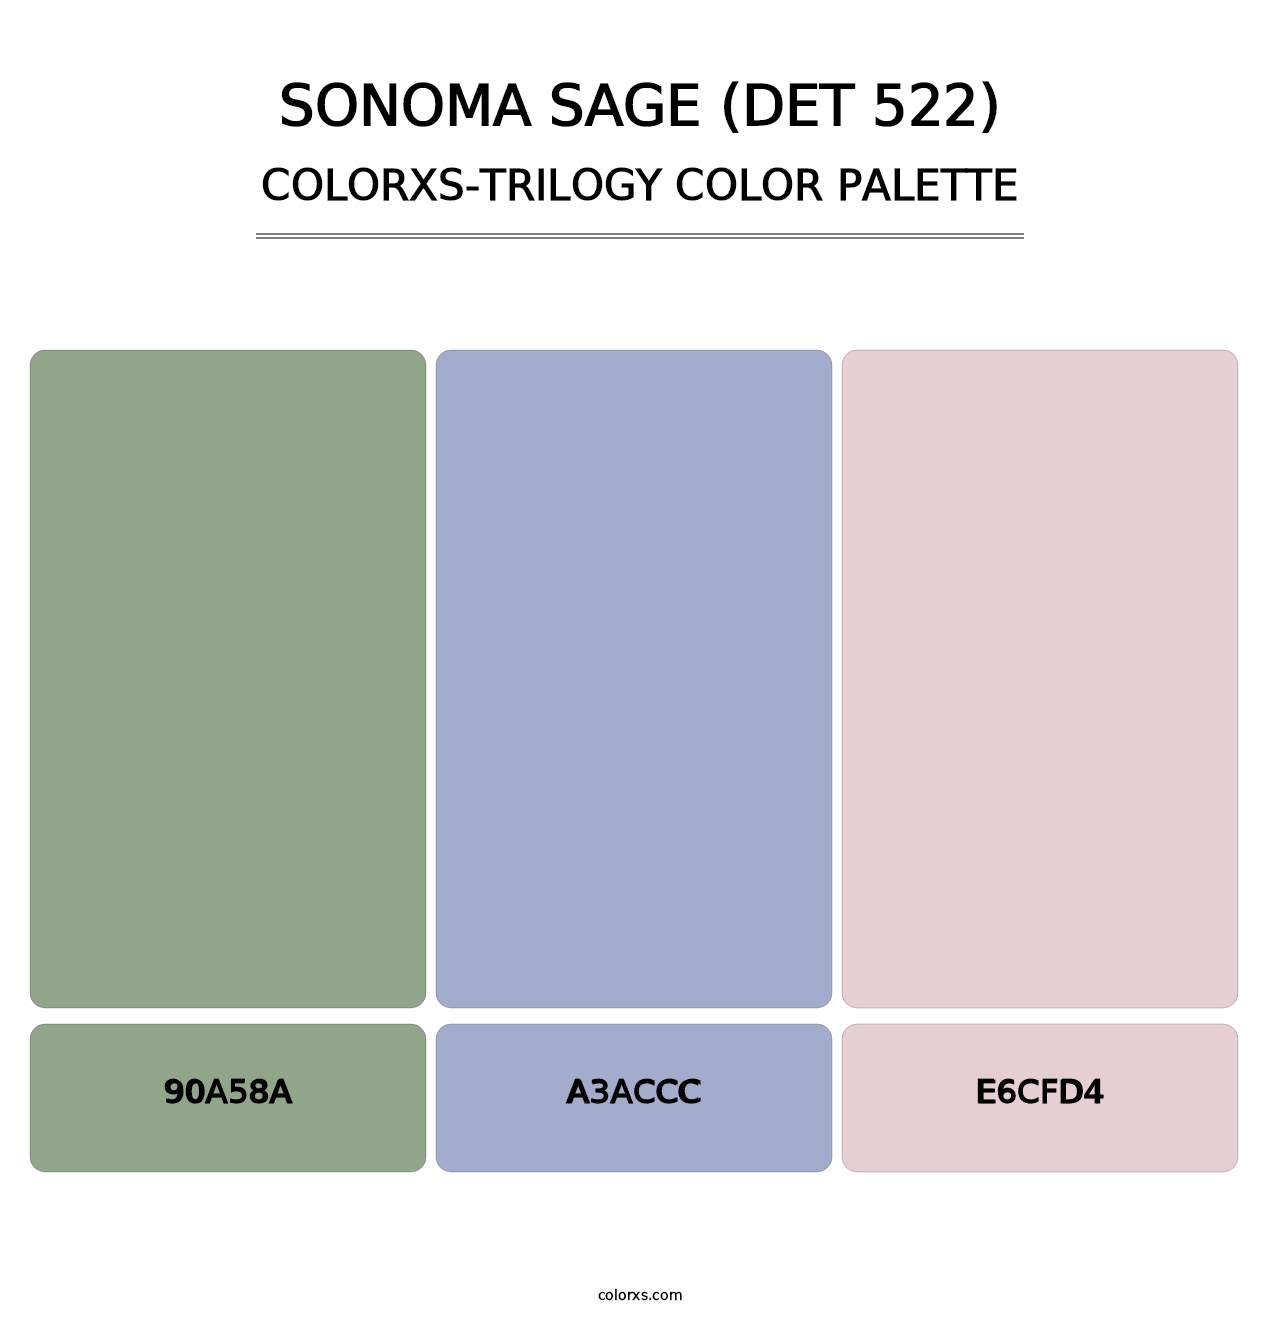 Sonoma Sage (DET 522) - Colorxs Trilogy Palette